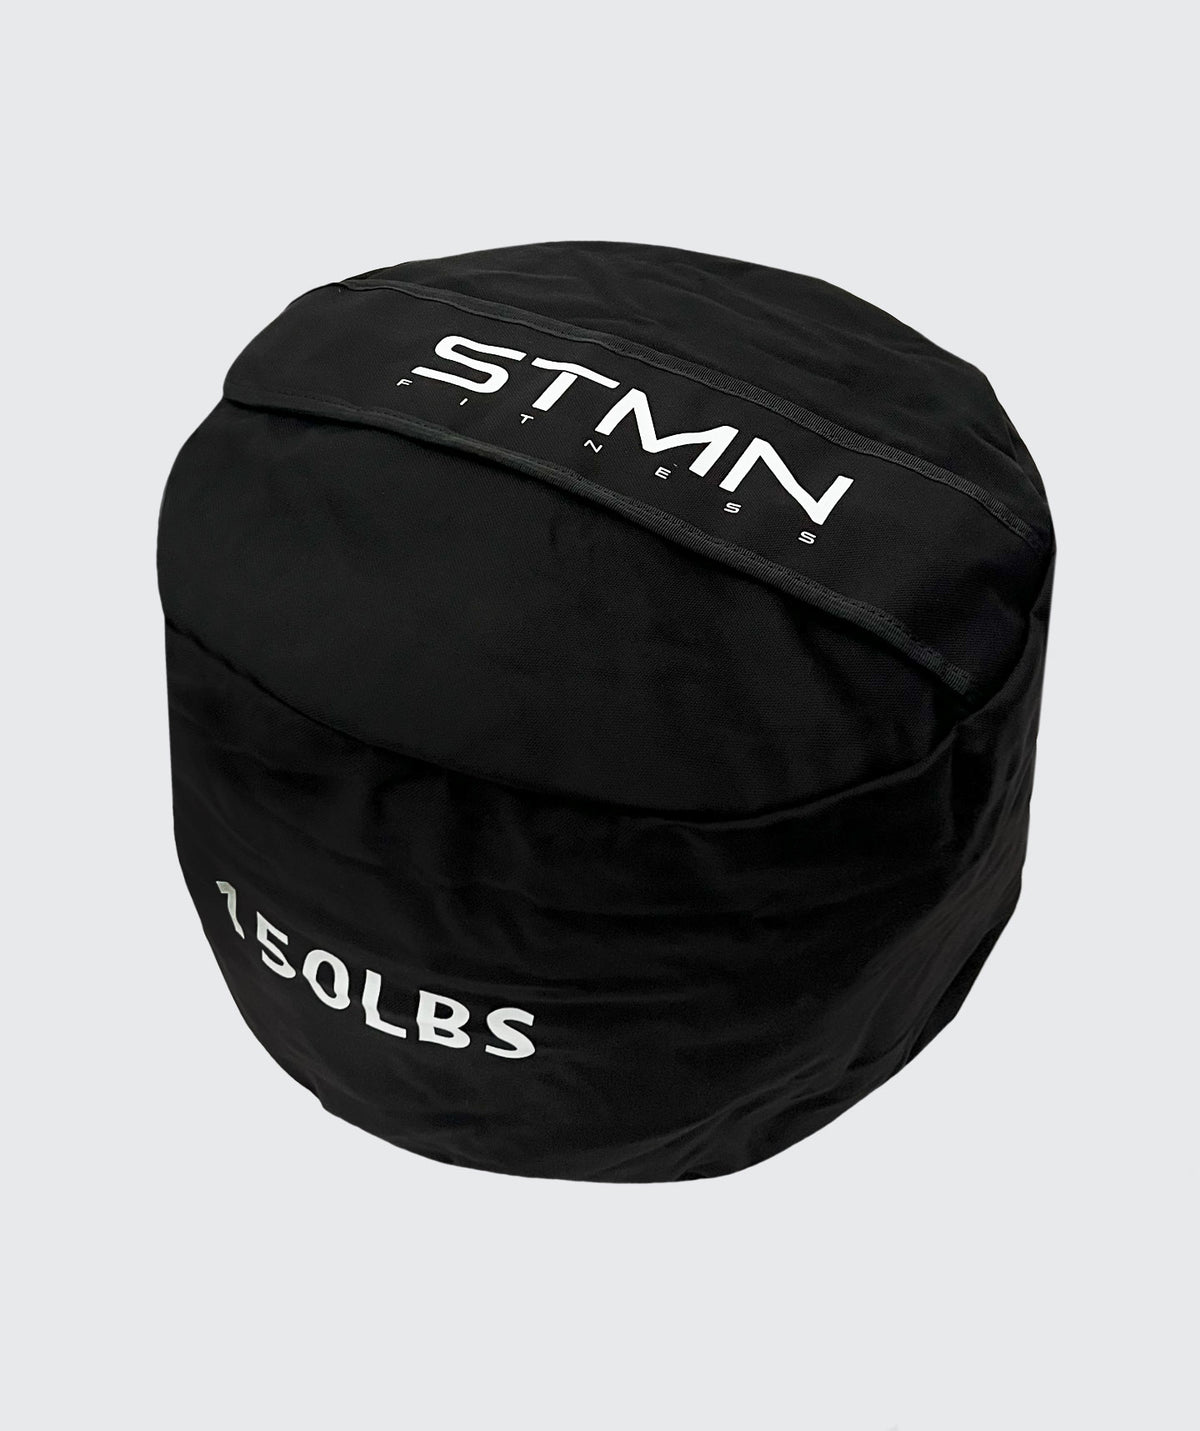 Strongman Sandbag 70 kg - STMN Fitness